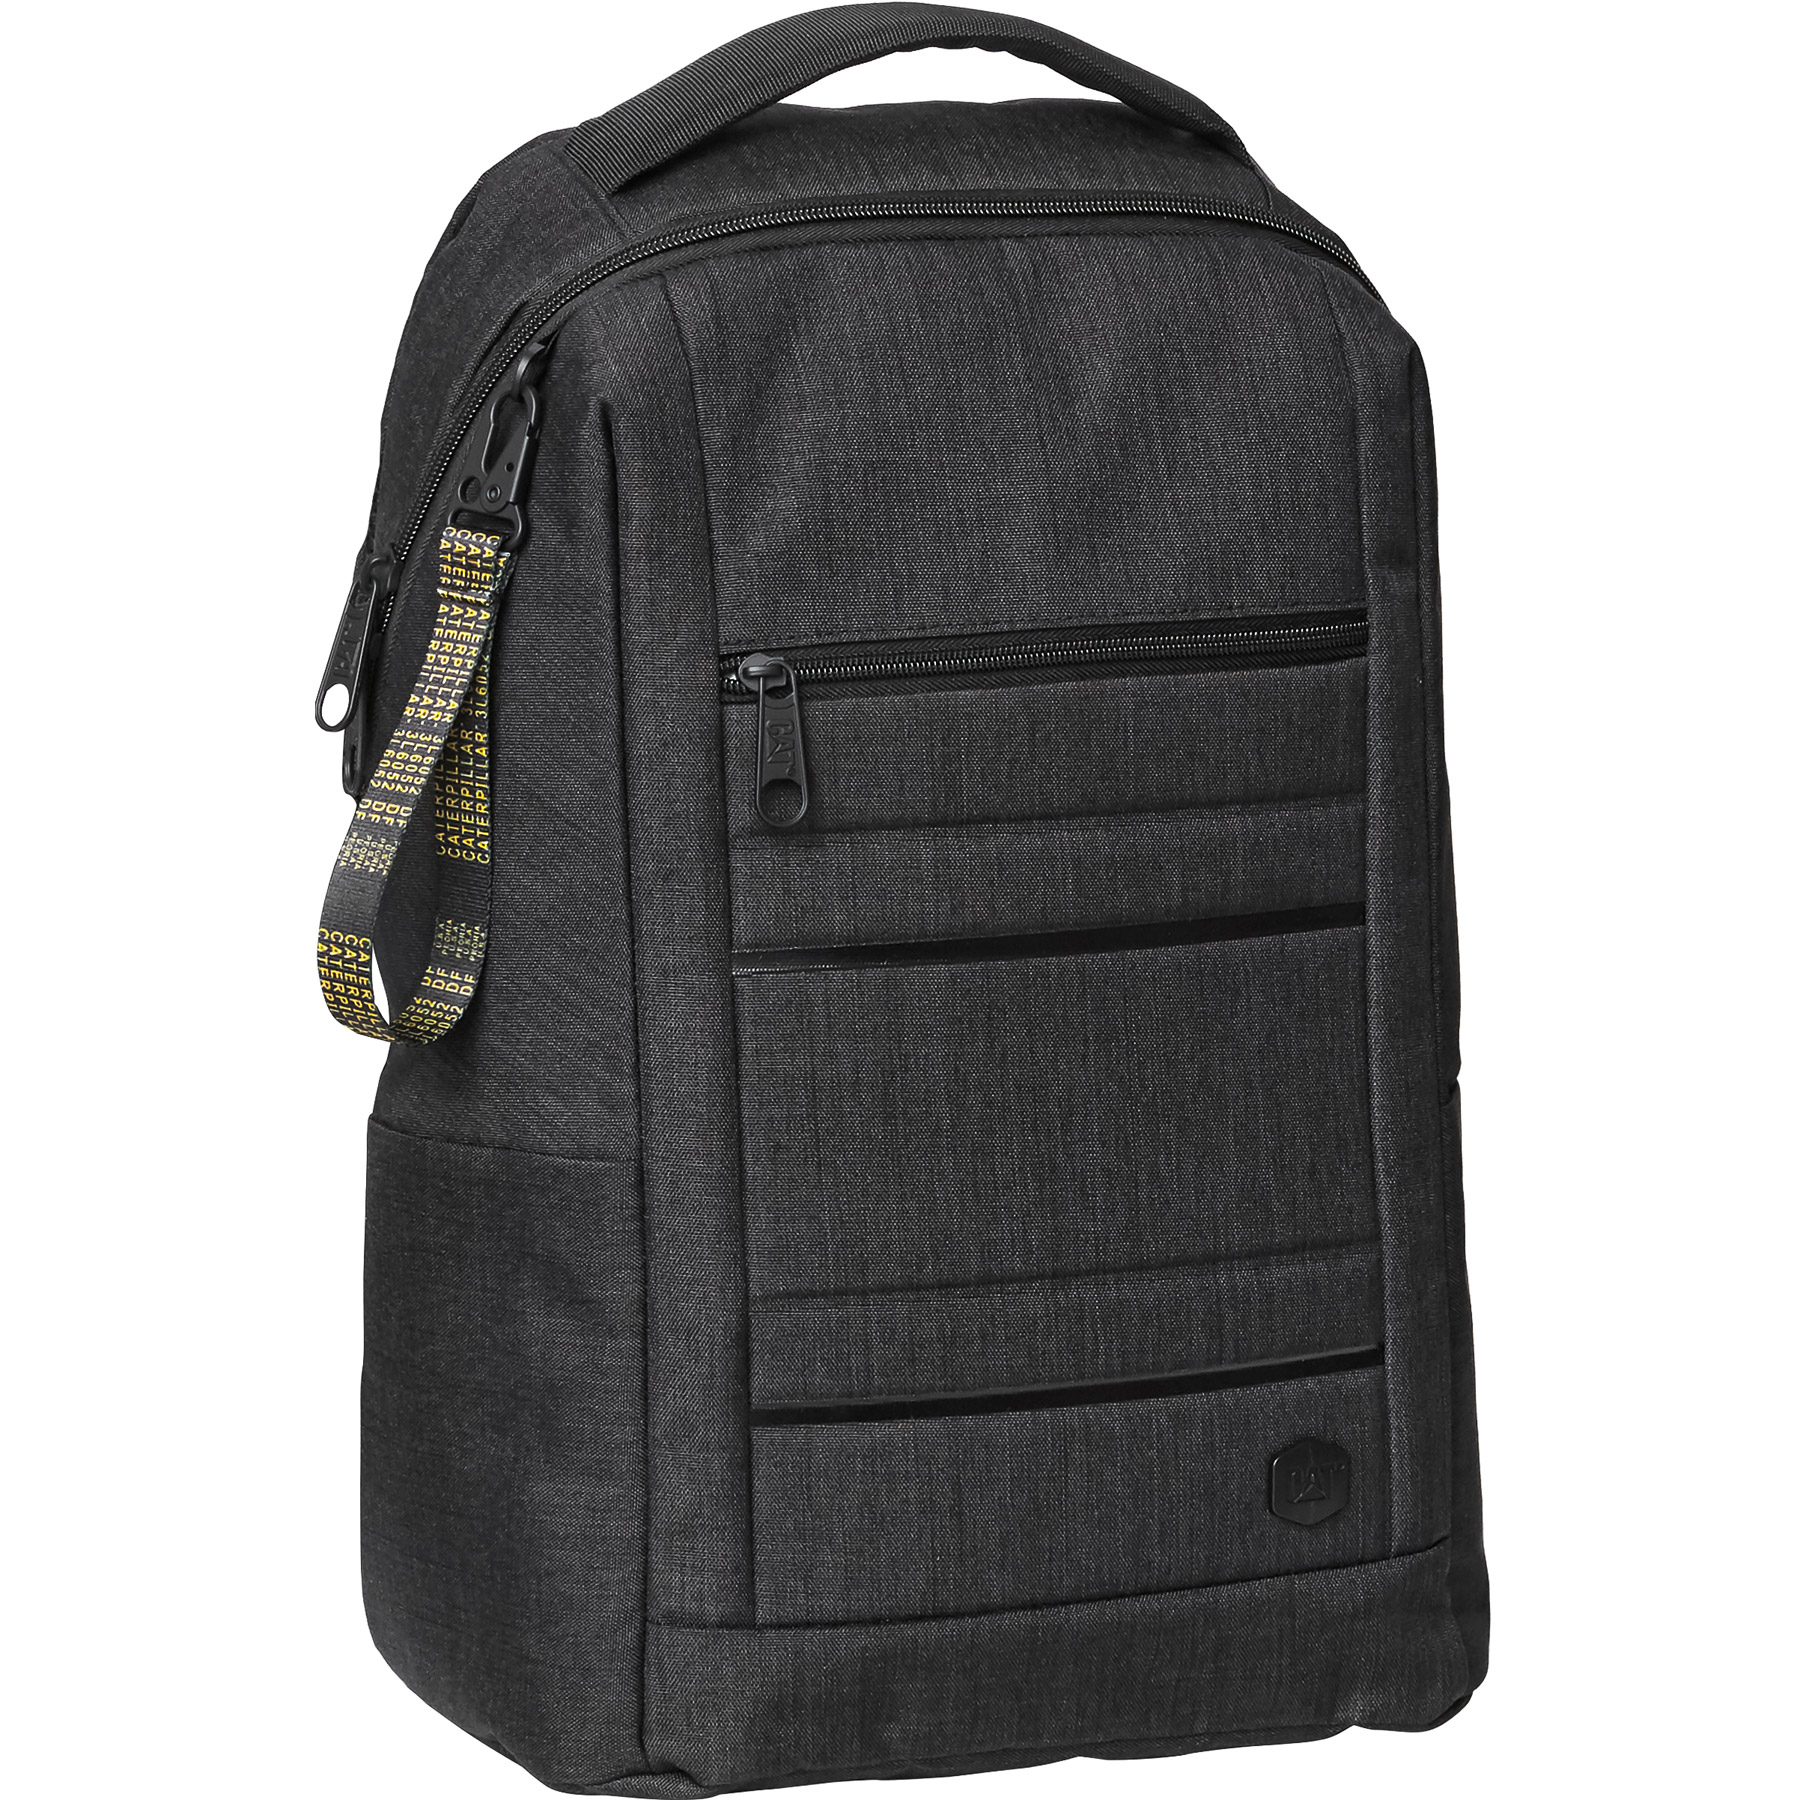 Рюкзак повсякденний з відділенням для ноутбука 16 дюймів CAT Bizz Tools 84027;500 двоколірний чорний